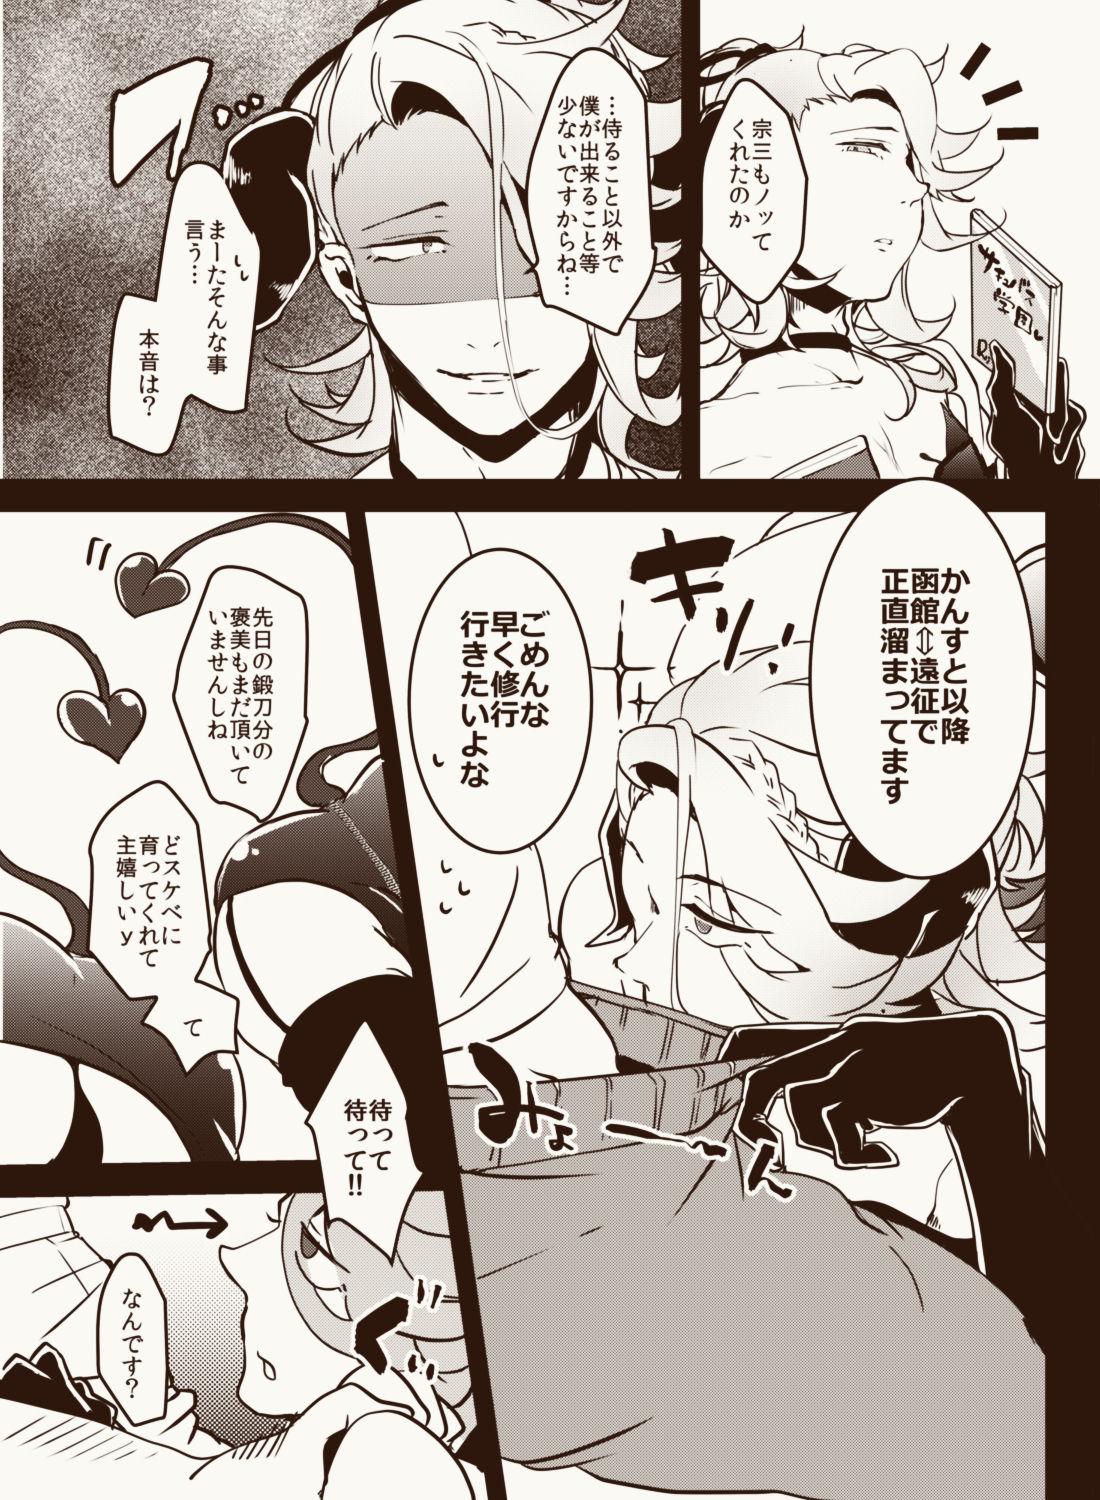 Harcore Inma Suki no omo o Iyashitai Oda-da Halloween - Touken ranbu Husband - Page 4